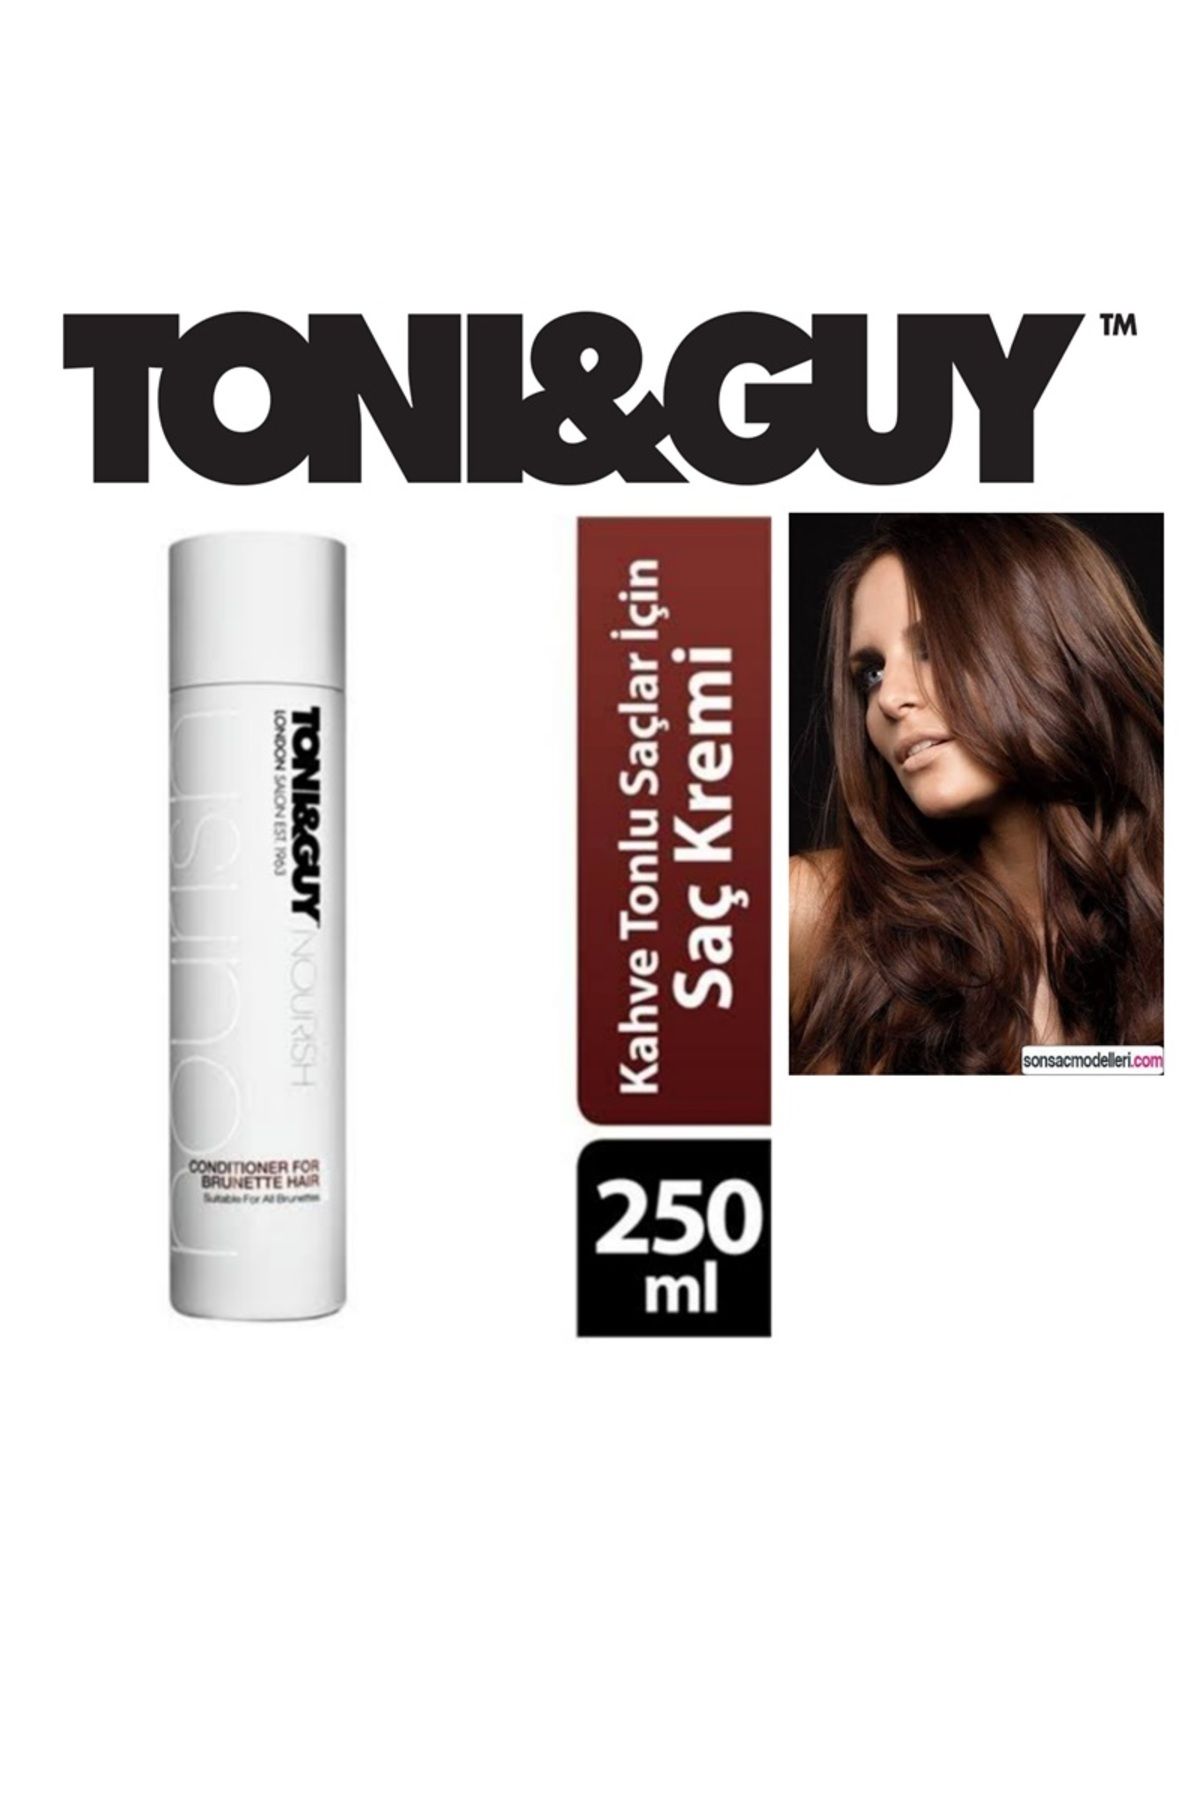 Toni Guy Toni & Guy Kahverengi Saçlara Canlılık Veren Saç Kremi- 250 Ml